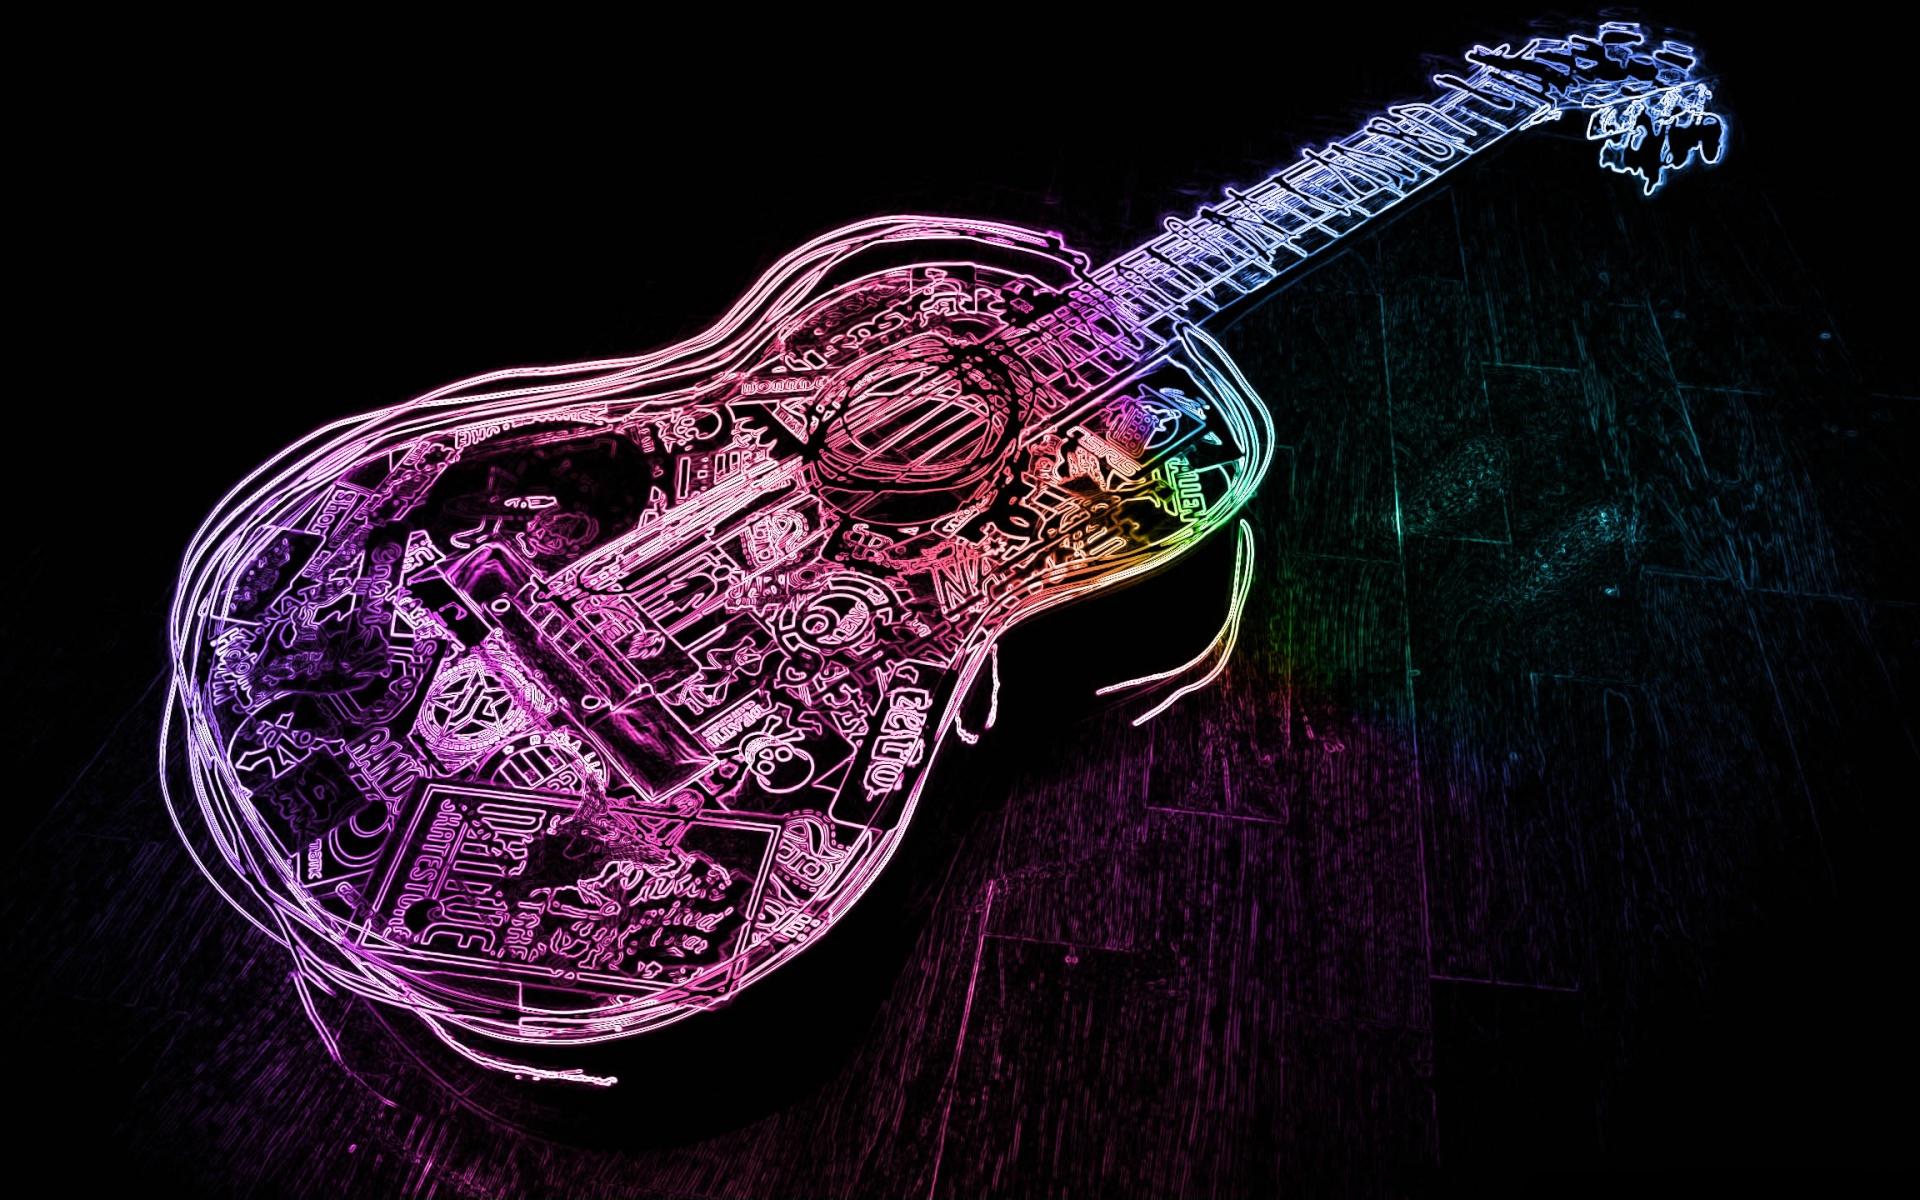 fond d'écran guitarra,guitare,instrument de musique,guitare électrique,instruments à cordes pincées,violet